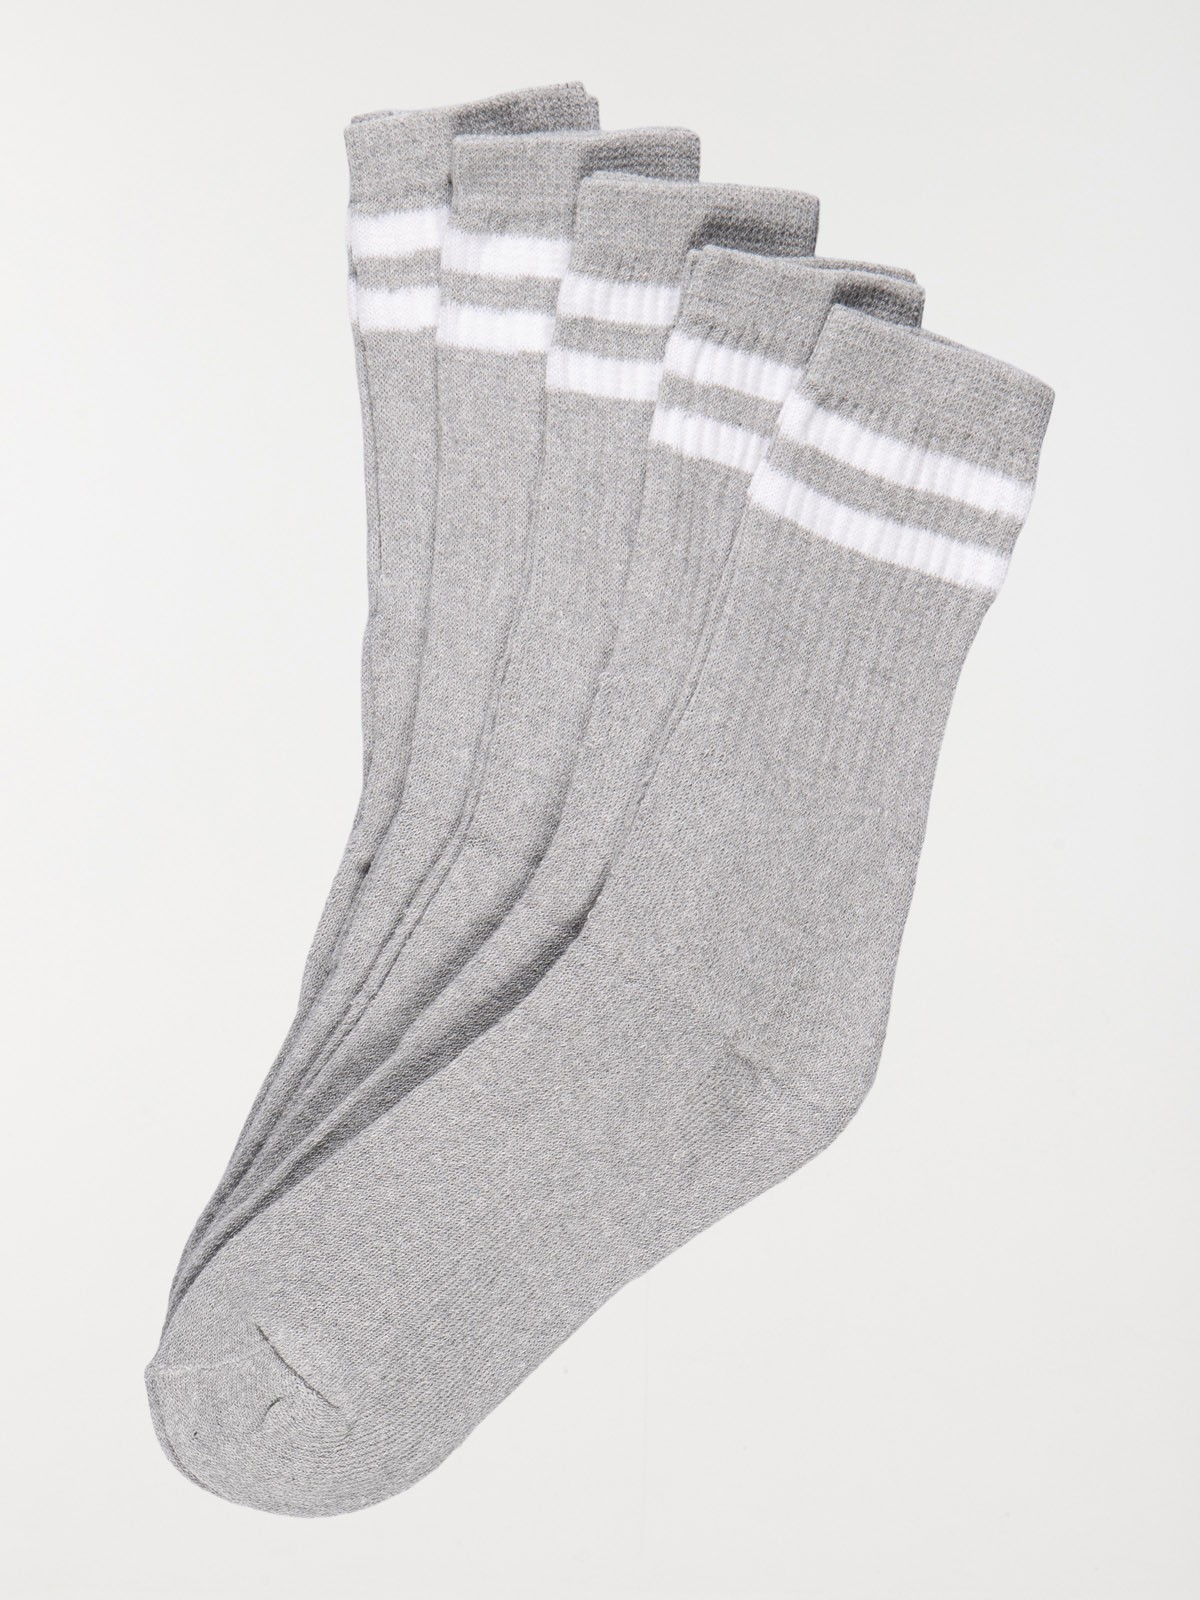 Lot chaussettes de sport gris homme - DistriCenter